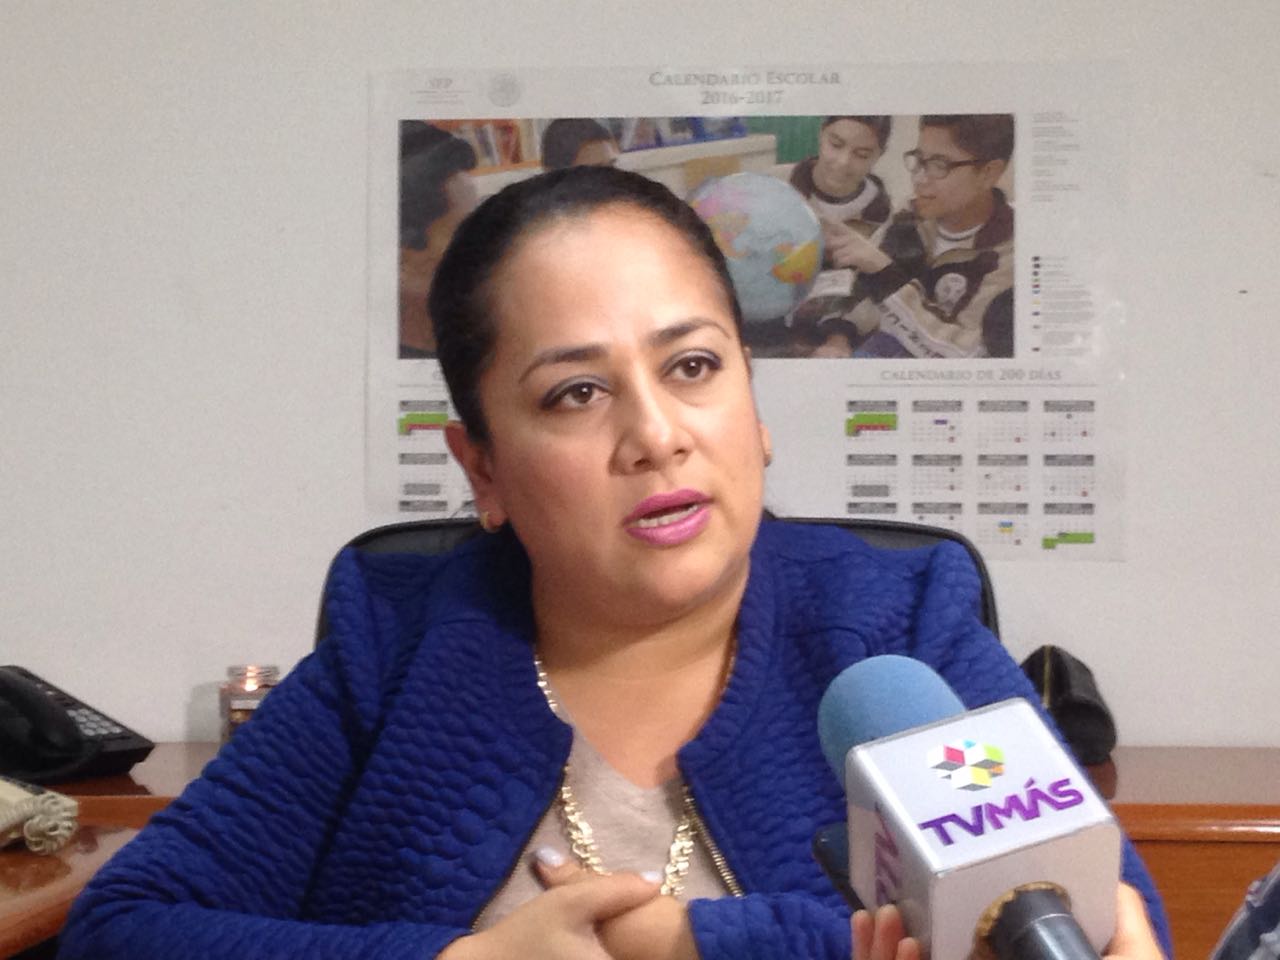 Escuelas en Veracruz piden apoyo para revisión de mochilas